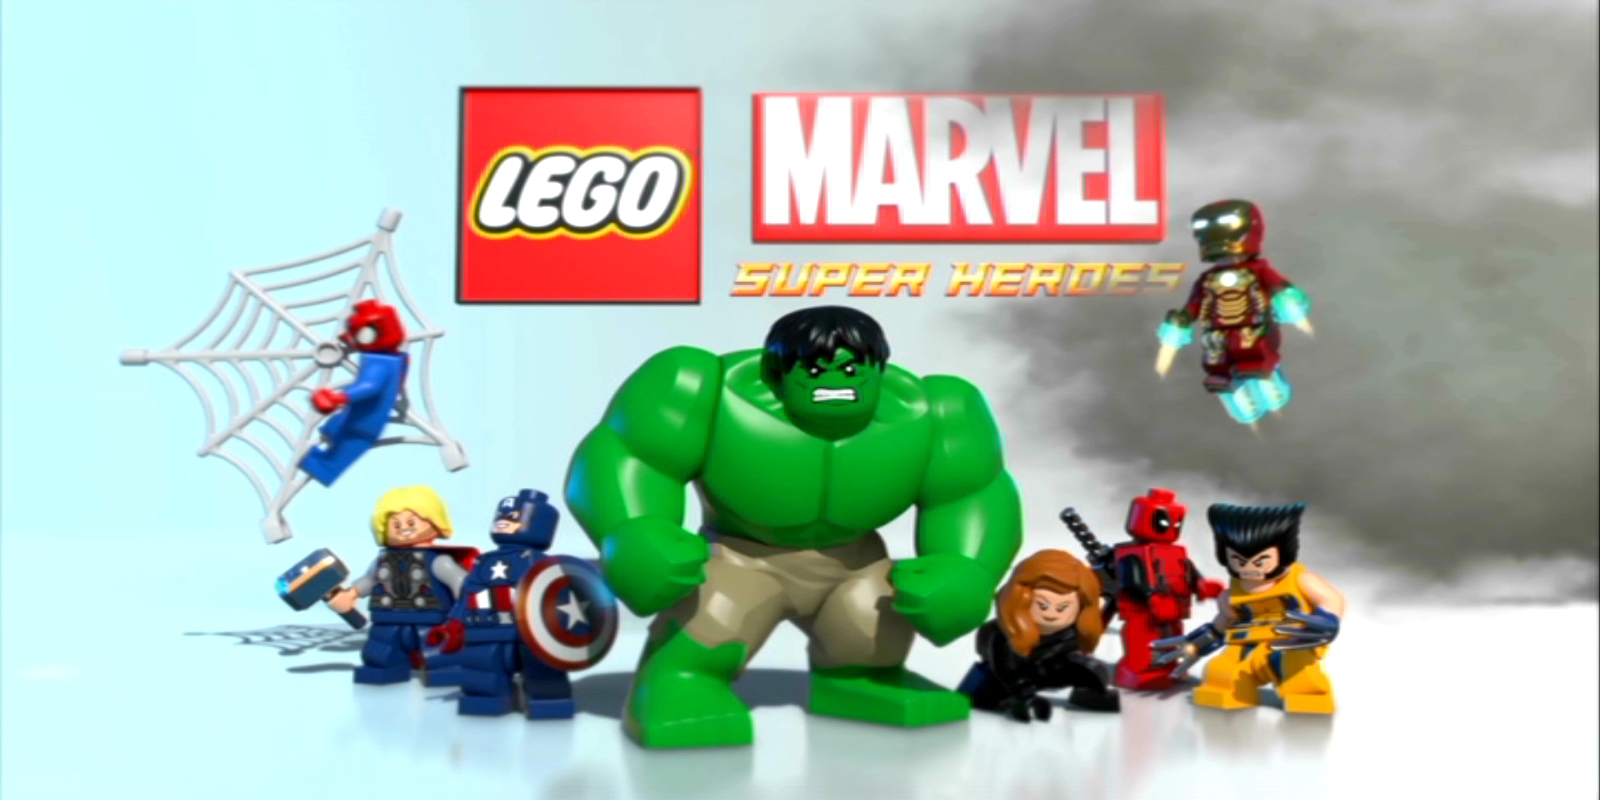 Lego Marvel Super Heroes Computer Wallpapers Desktop Backgrounds 1600x800